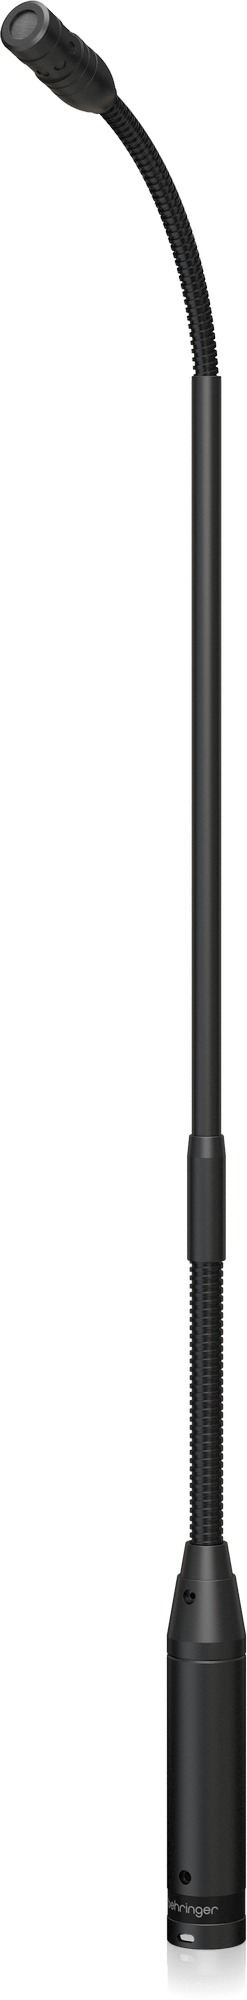 Micro cổ ngỗng Behringer TA5212 -- Condenser Microphone chính hãng Behringer